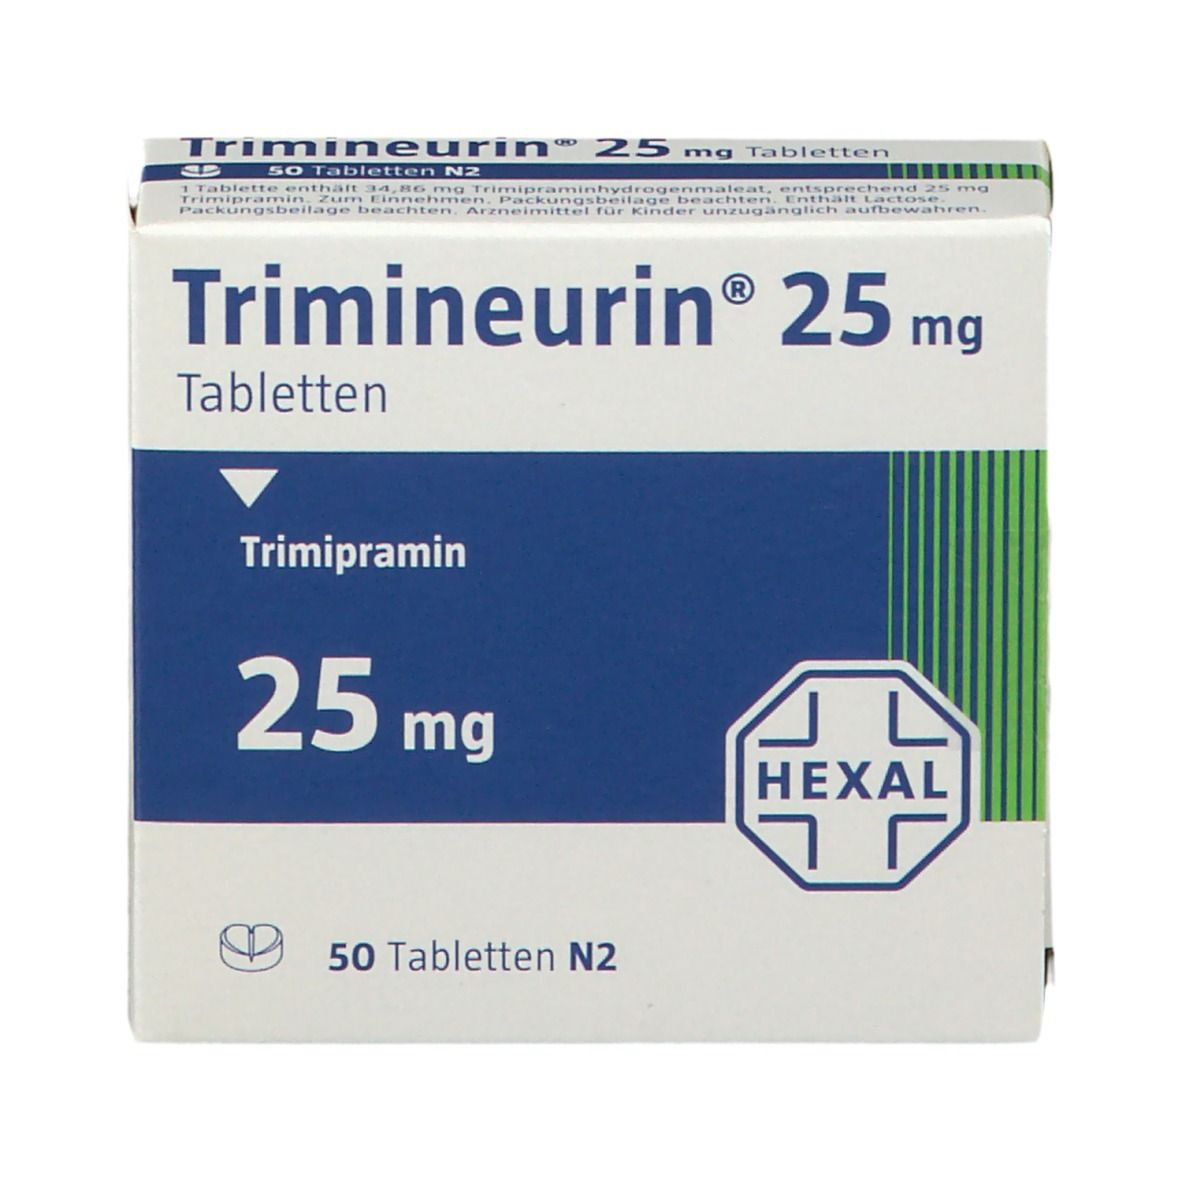 Trimineurin® 25 mg